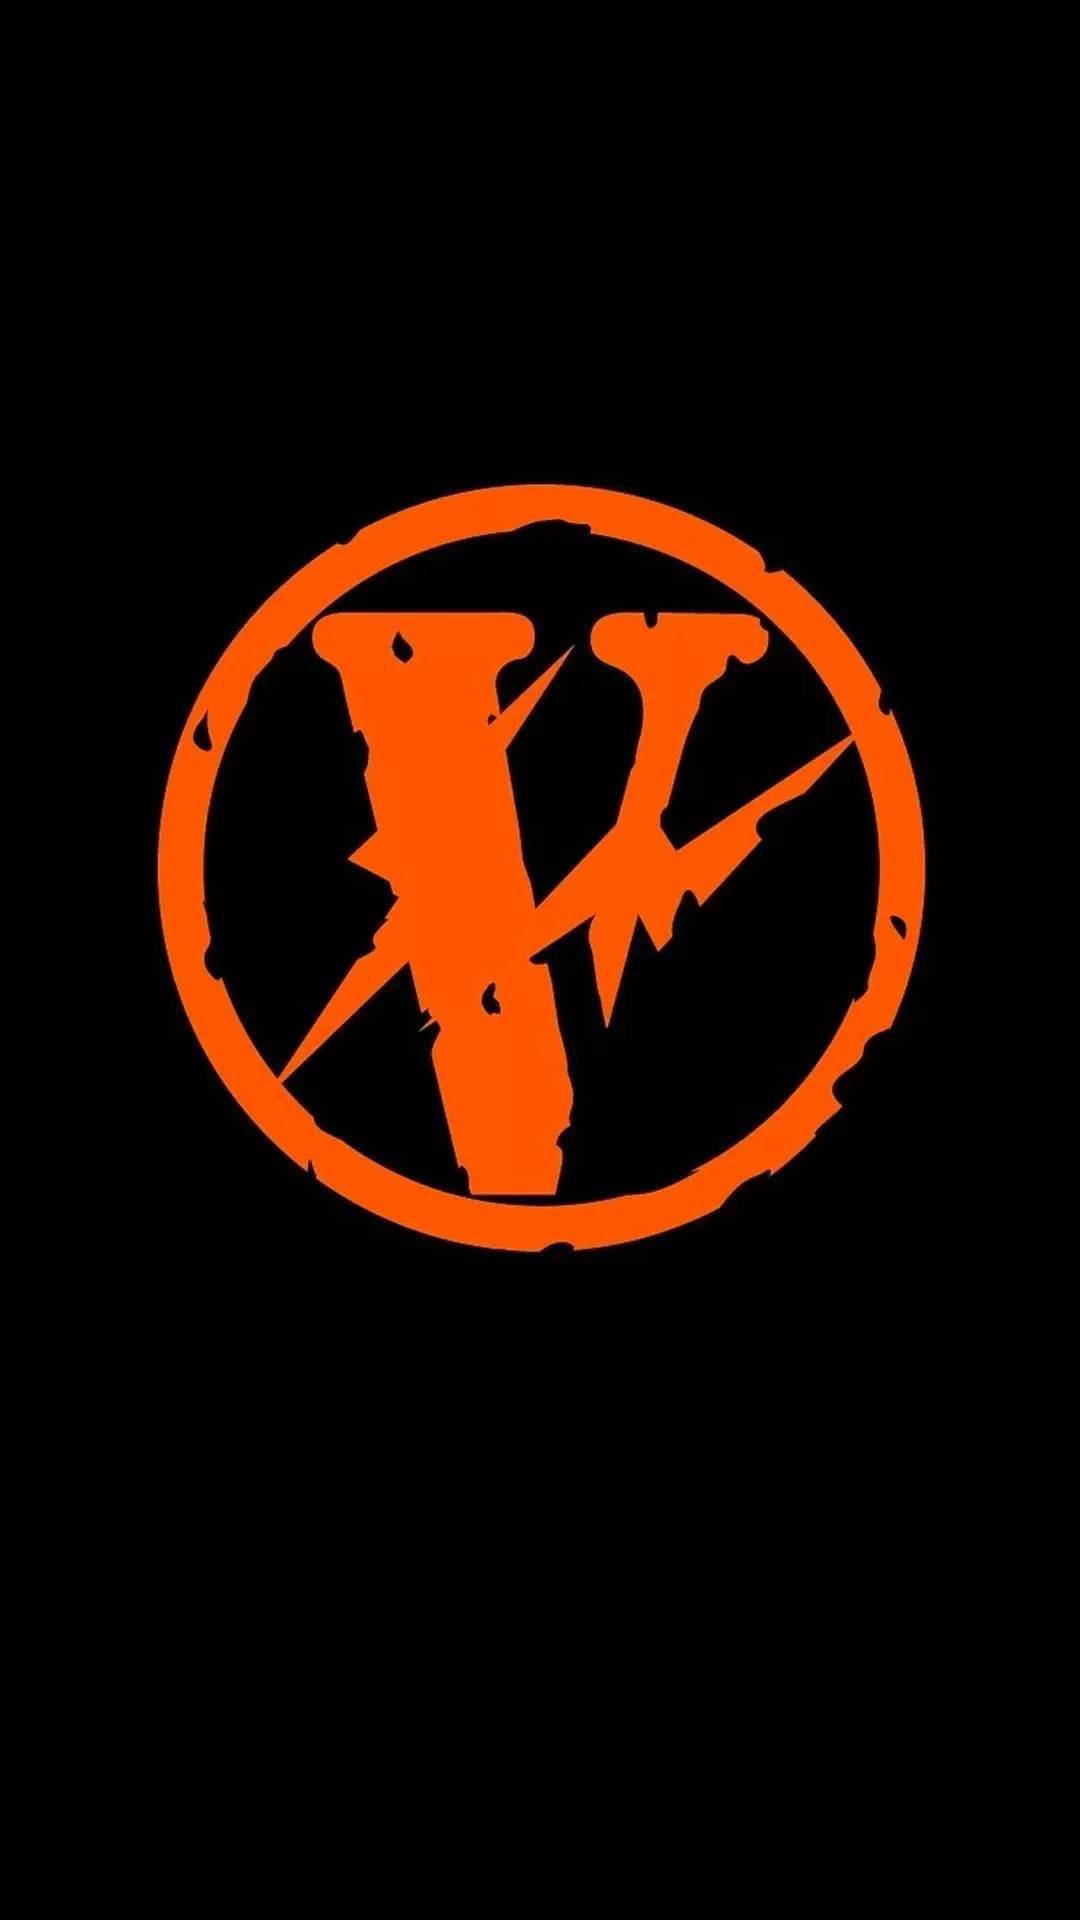 Orange Circle Logo Vlone PFP Wallpaper